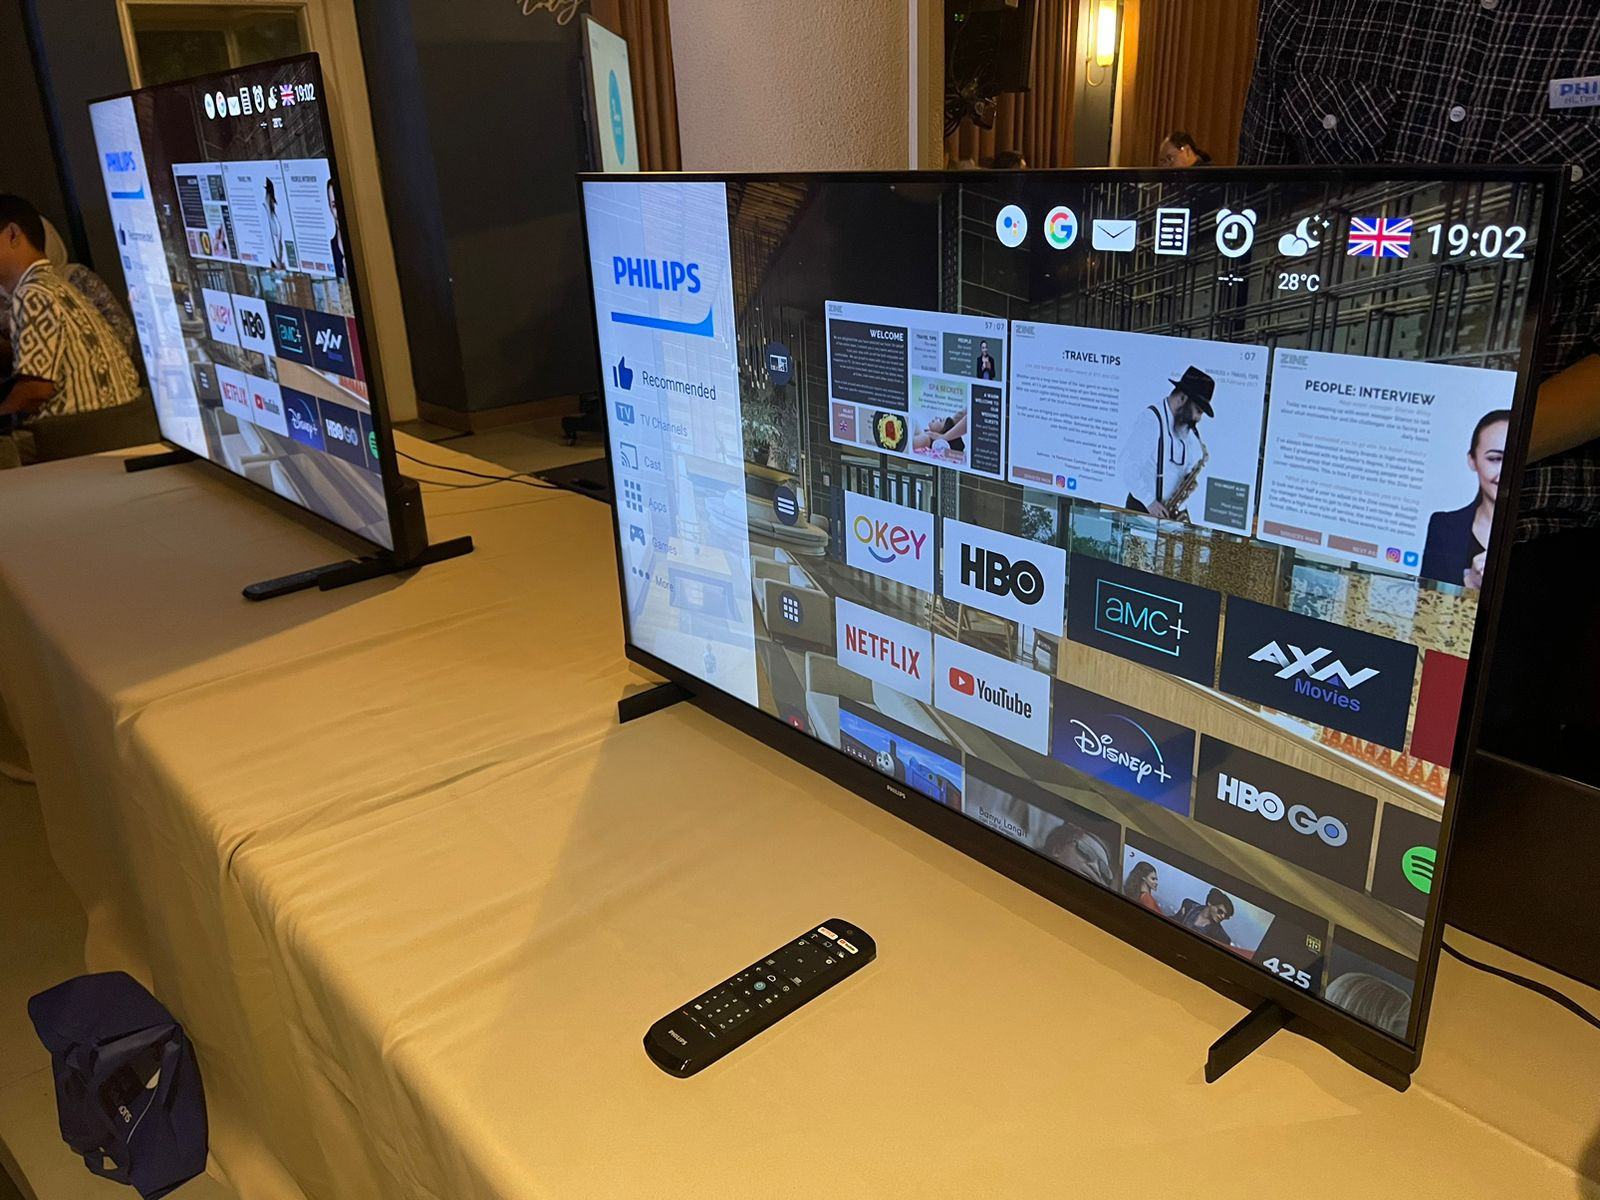 Kominfo beberkan manfaat TV digital bagi banyak pihak